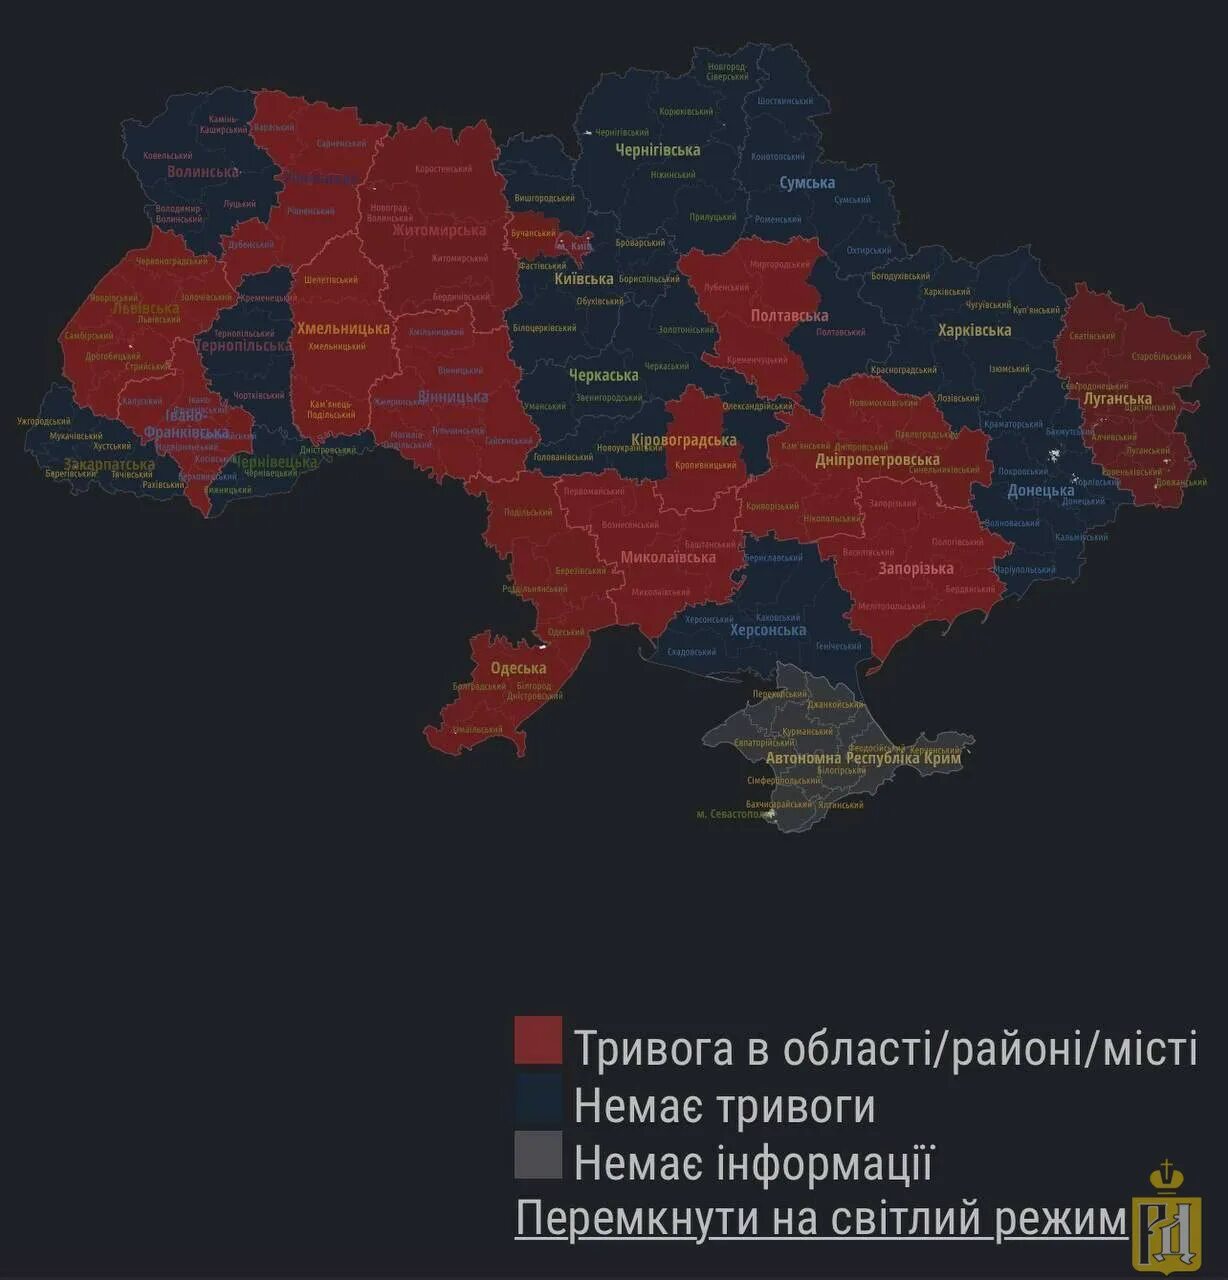 Карта Украины на сегодняшний день. Карта тревог в Украине. Карта воздушных тревог в Украине. Области Украины.